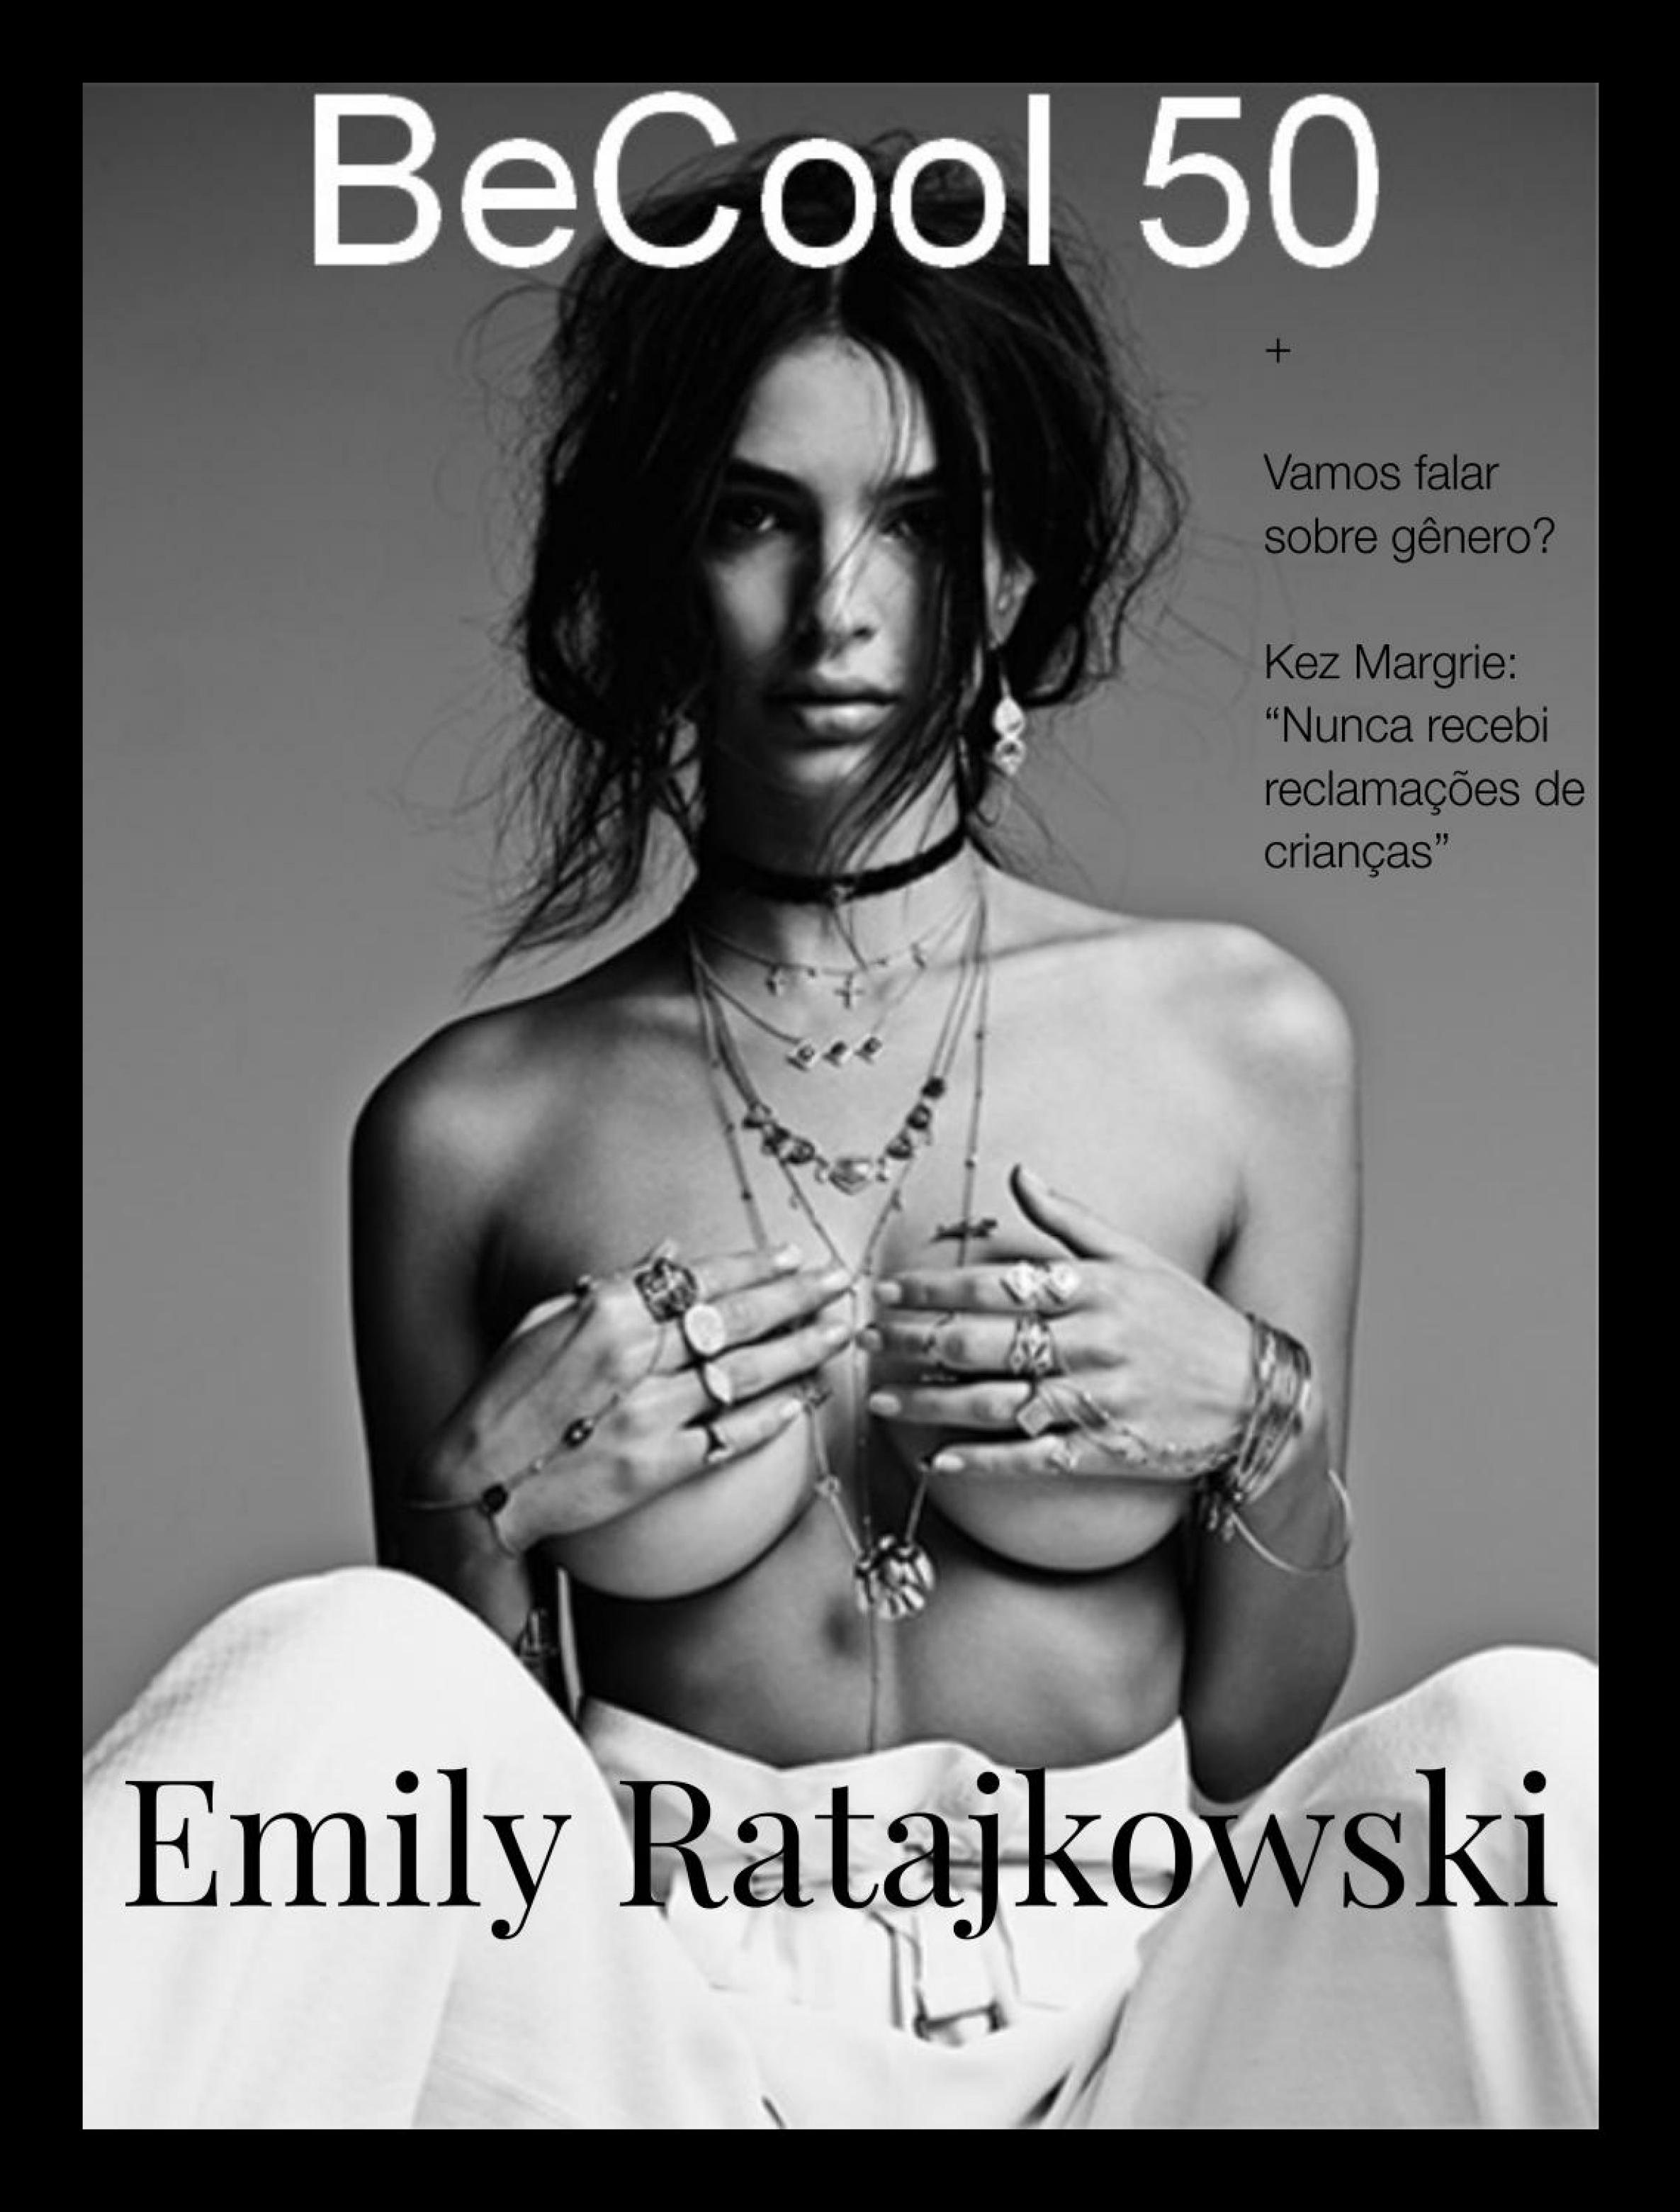 Topless Photos of Emily Ratajkowski